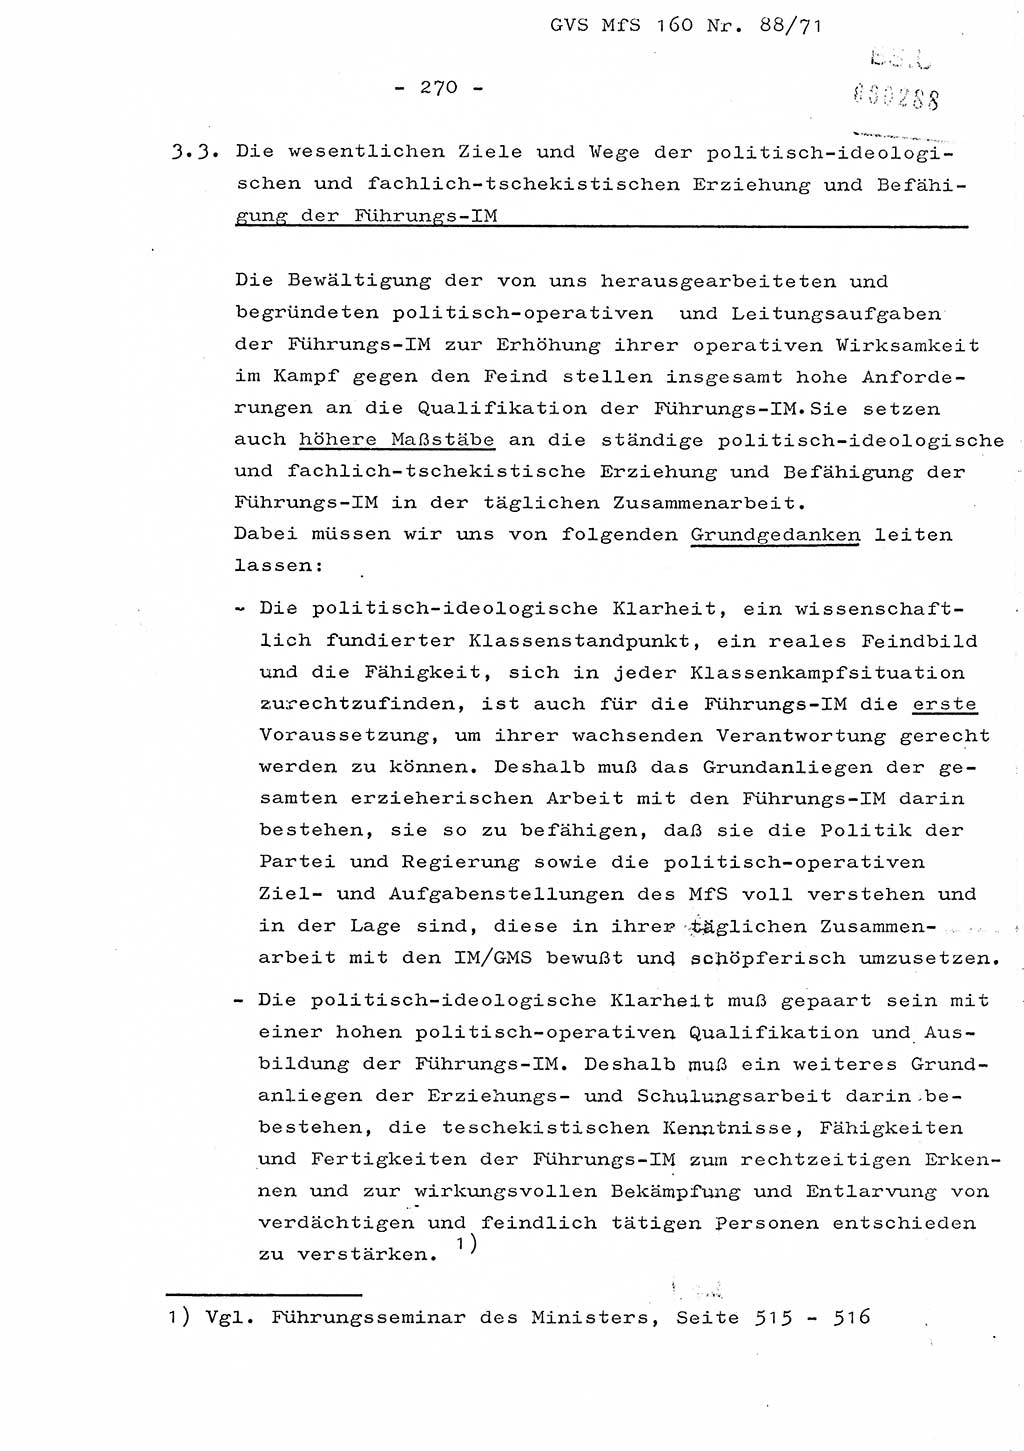 Dissertation Oberstleutnant Josef Schwarz (BV Schwerin), Major Fritz Amm (JHS), Hauptmann Peter Gräßler (JHS), Ministerium für Staatssicherheit (MfS) [Deutsche Demokratische Republik (DDR)], Juristische Hochschule (JHS), Geheime Verschlußsache (GVS) 160-88/71, Potsdam 1972, Seite 270 (Diss. MfS DDR JHS GVS 160-88/71 1972, S. 270)